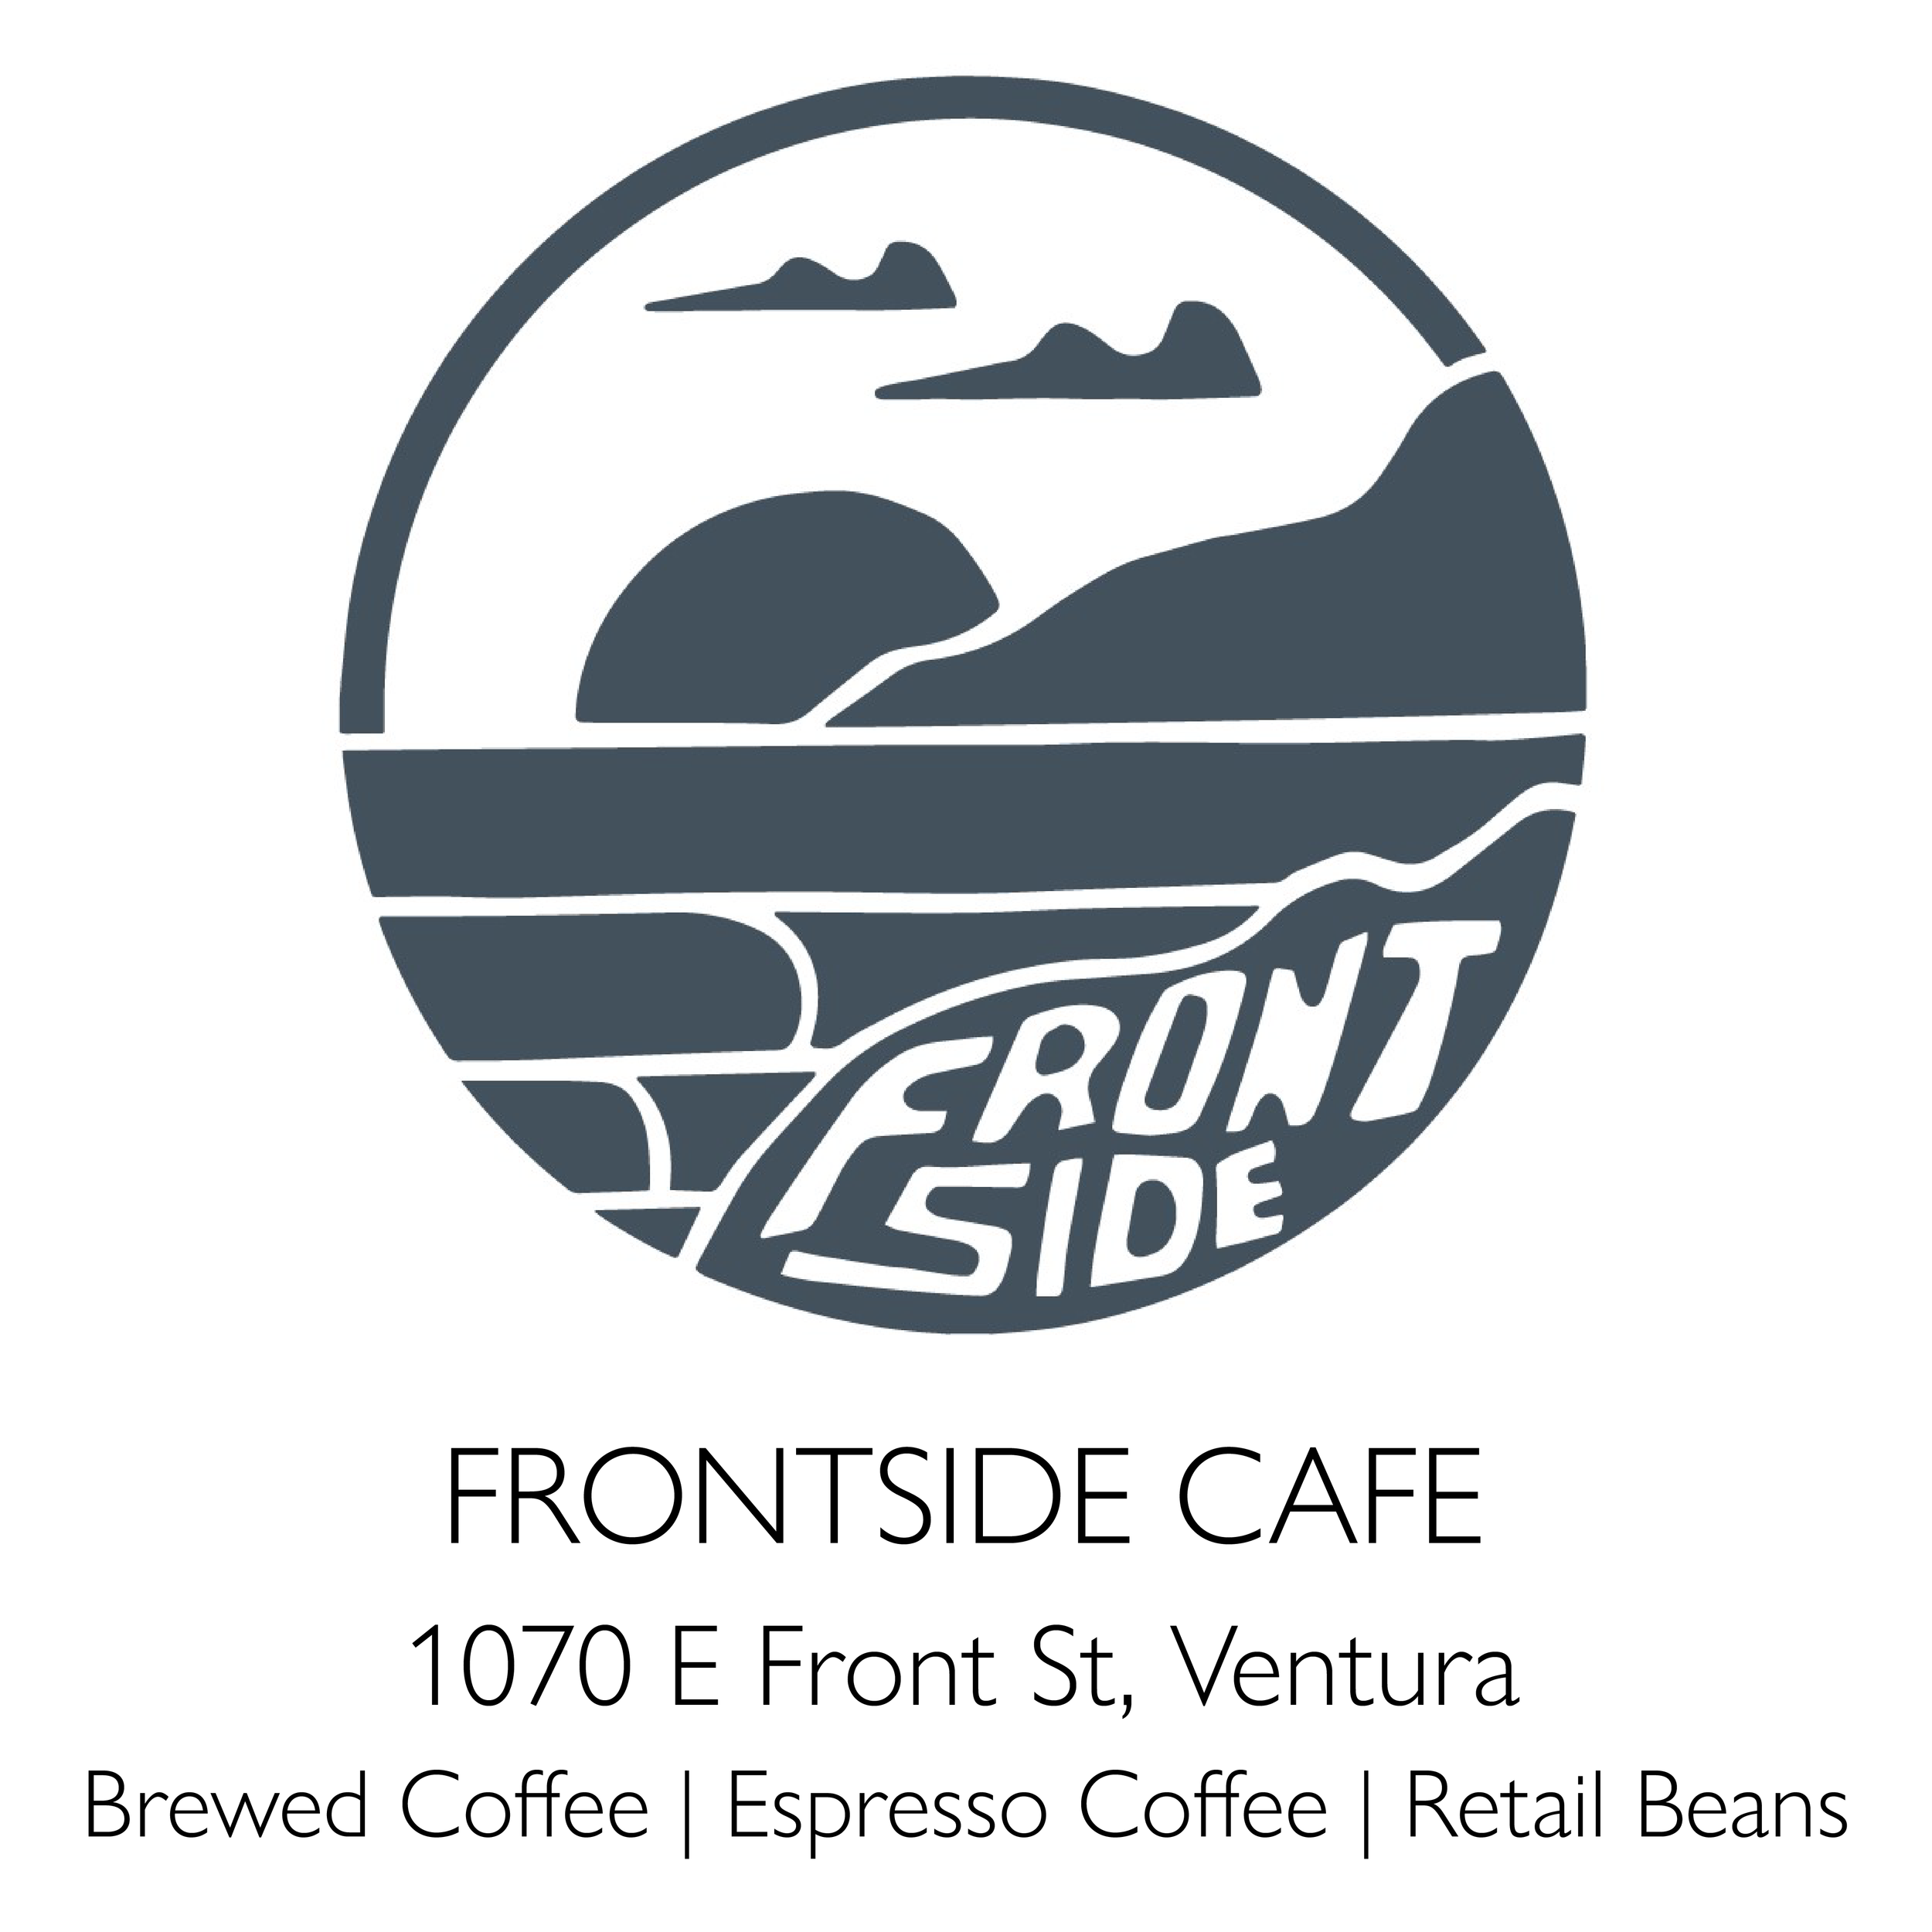 Frontside Cafe